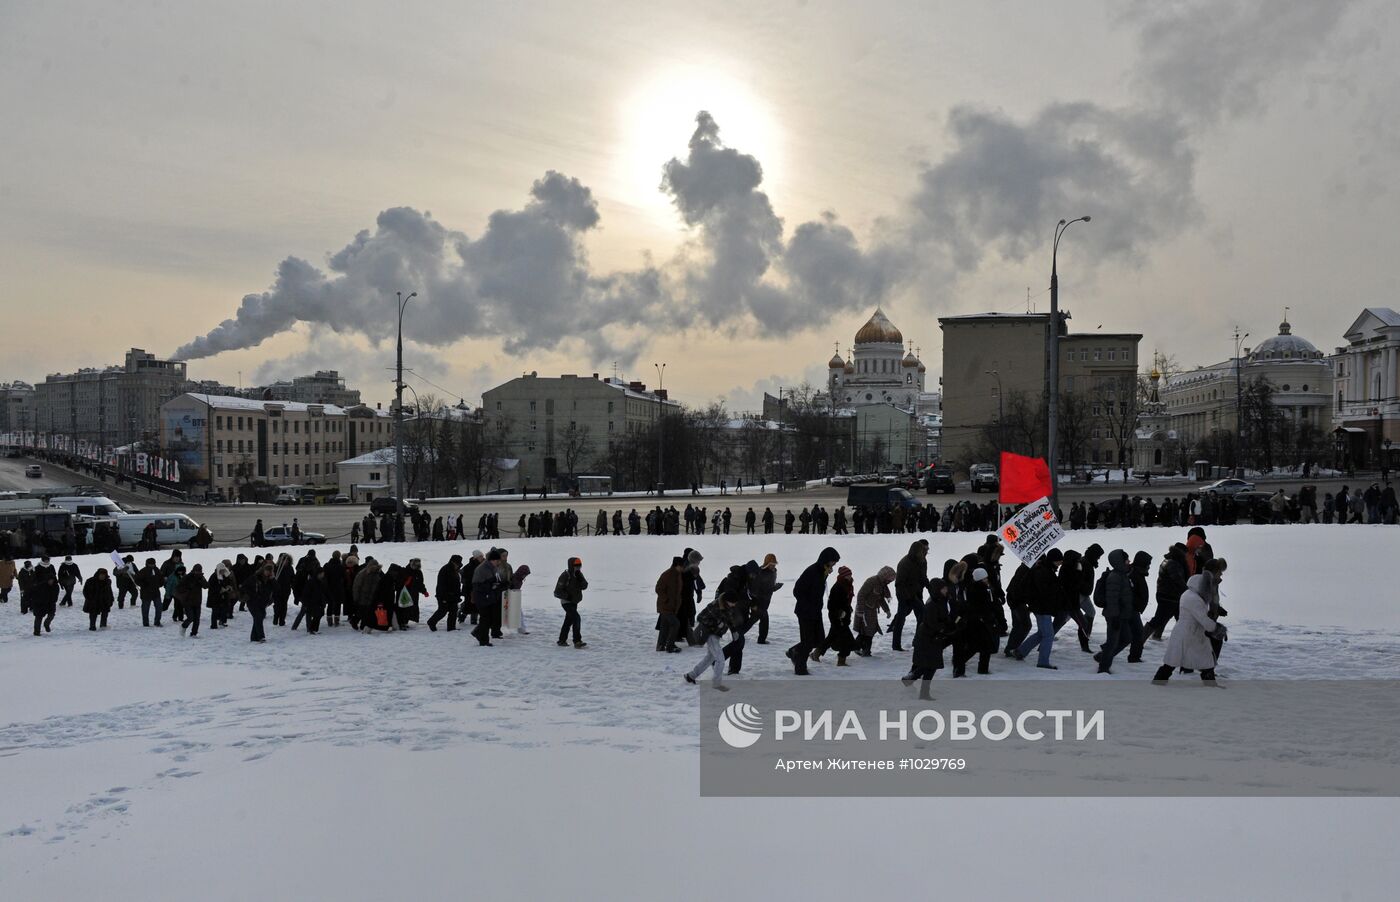 Митинг и шествие "За честные выборы" в Москве